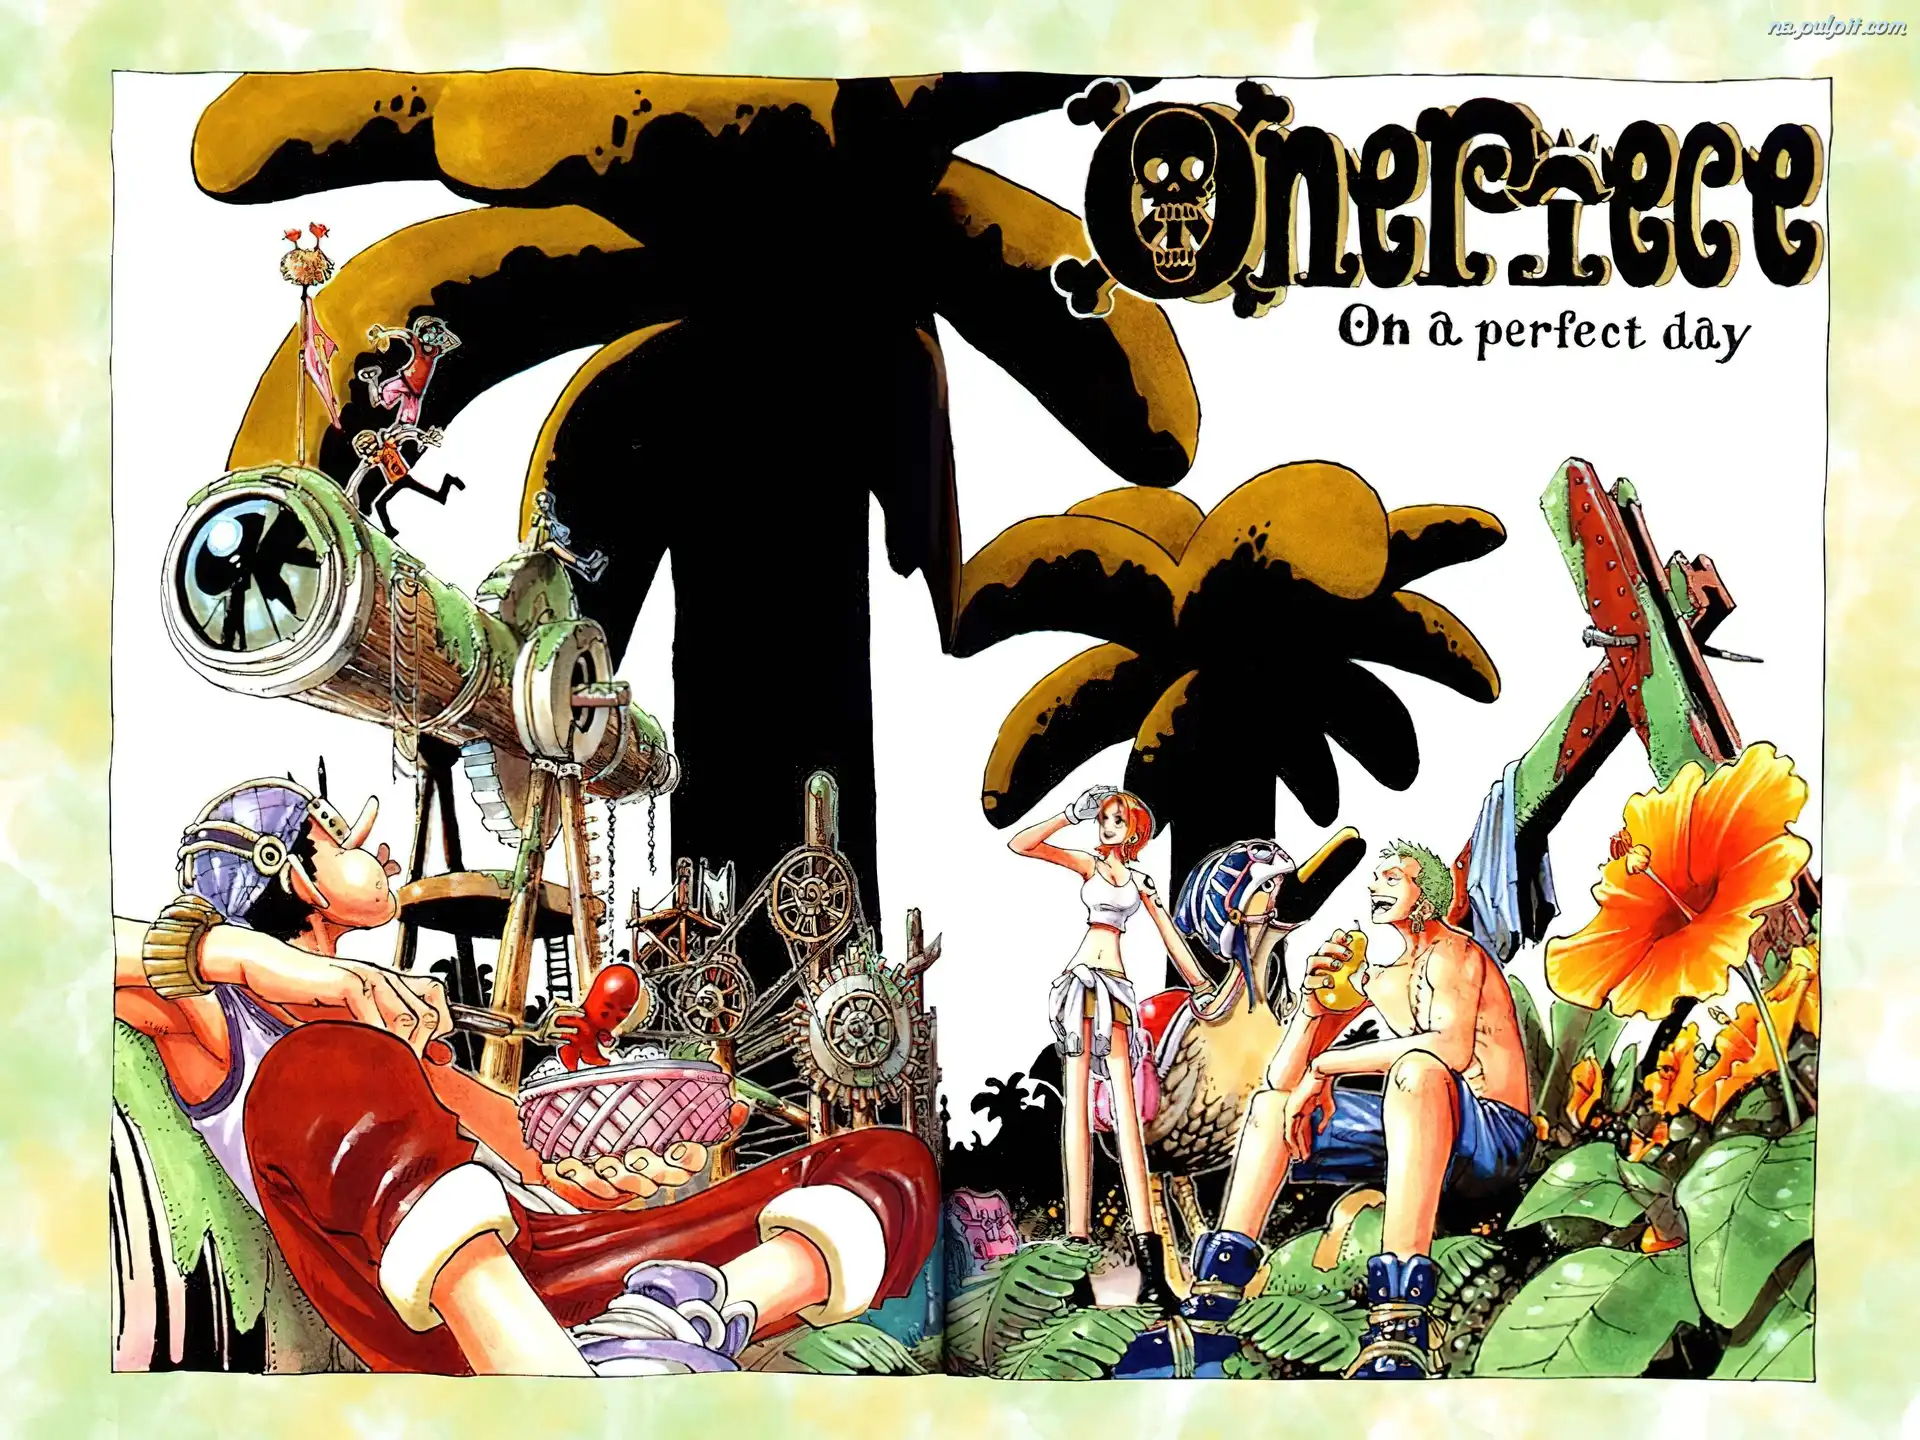 palma, One Piece, ludzie